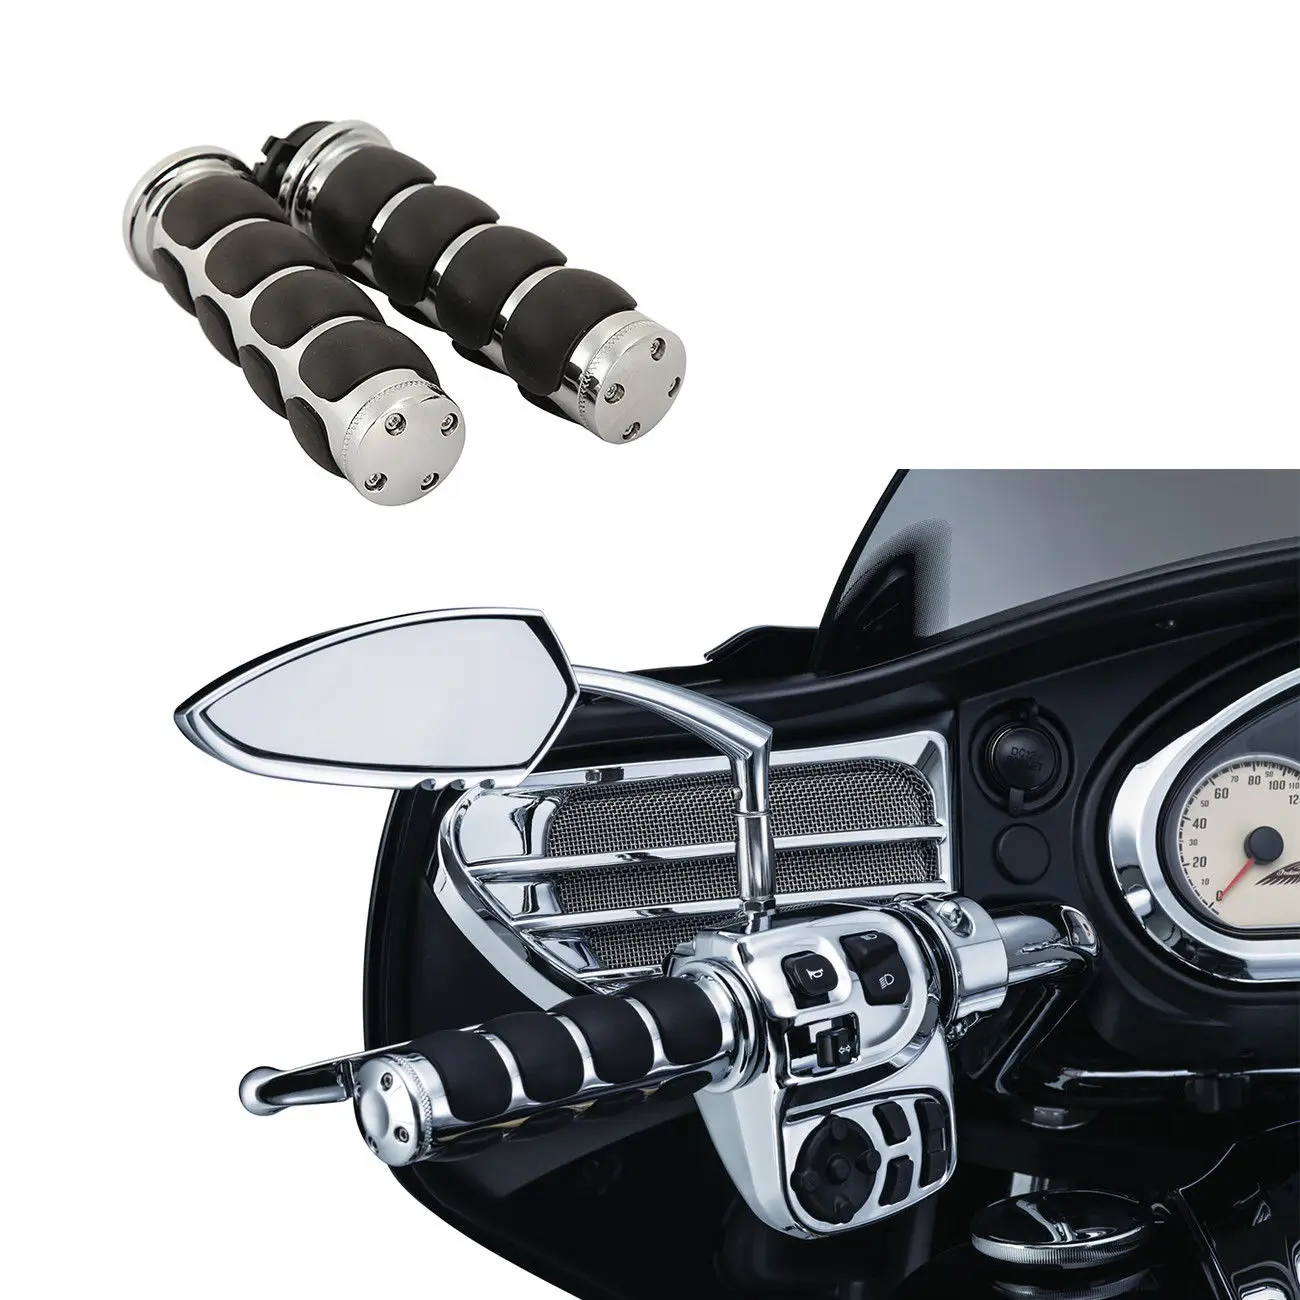 Пара 25 мм " мотоциклетная резиновая рукоятка руль для Harley Sportster XL 883 1200 Touring Dyna Softail на заказ